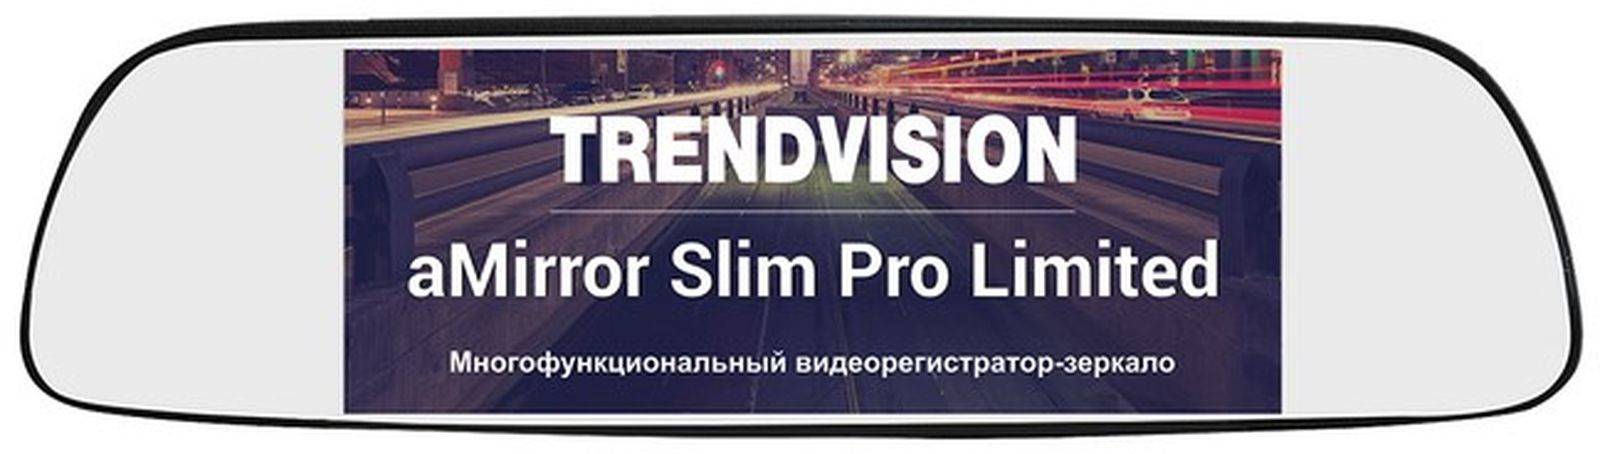 Trendvision amirror 12 android pro: видеорегистратор на android с функциями планшета